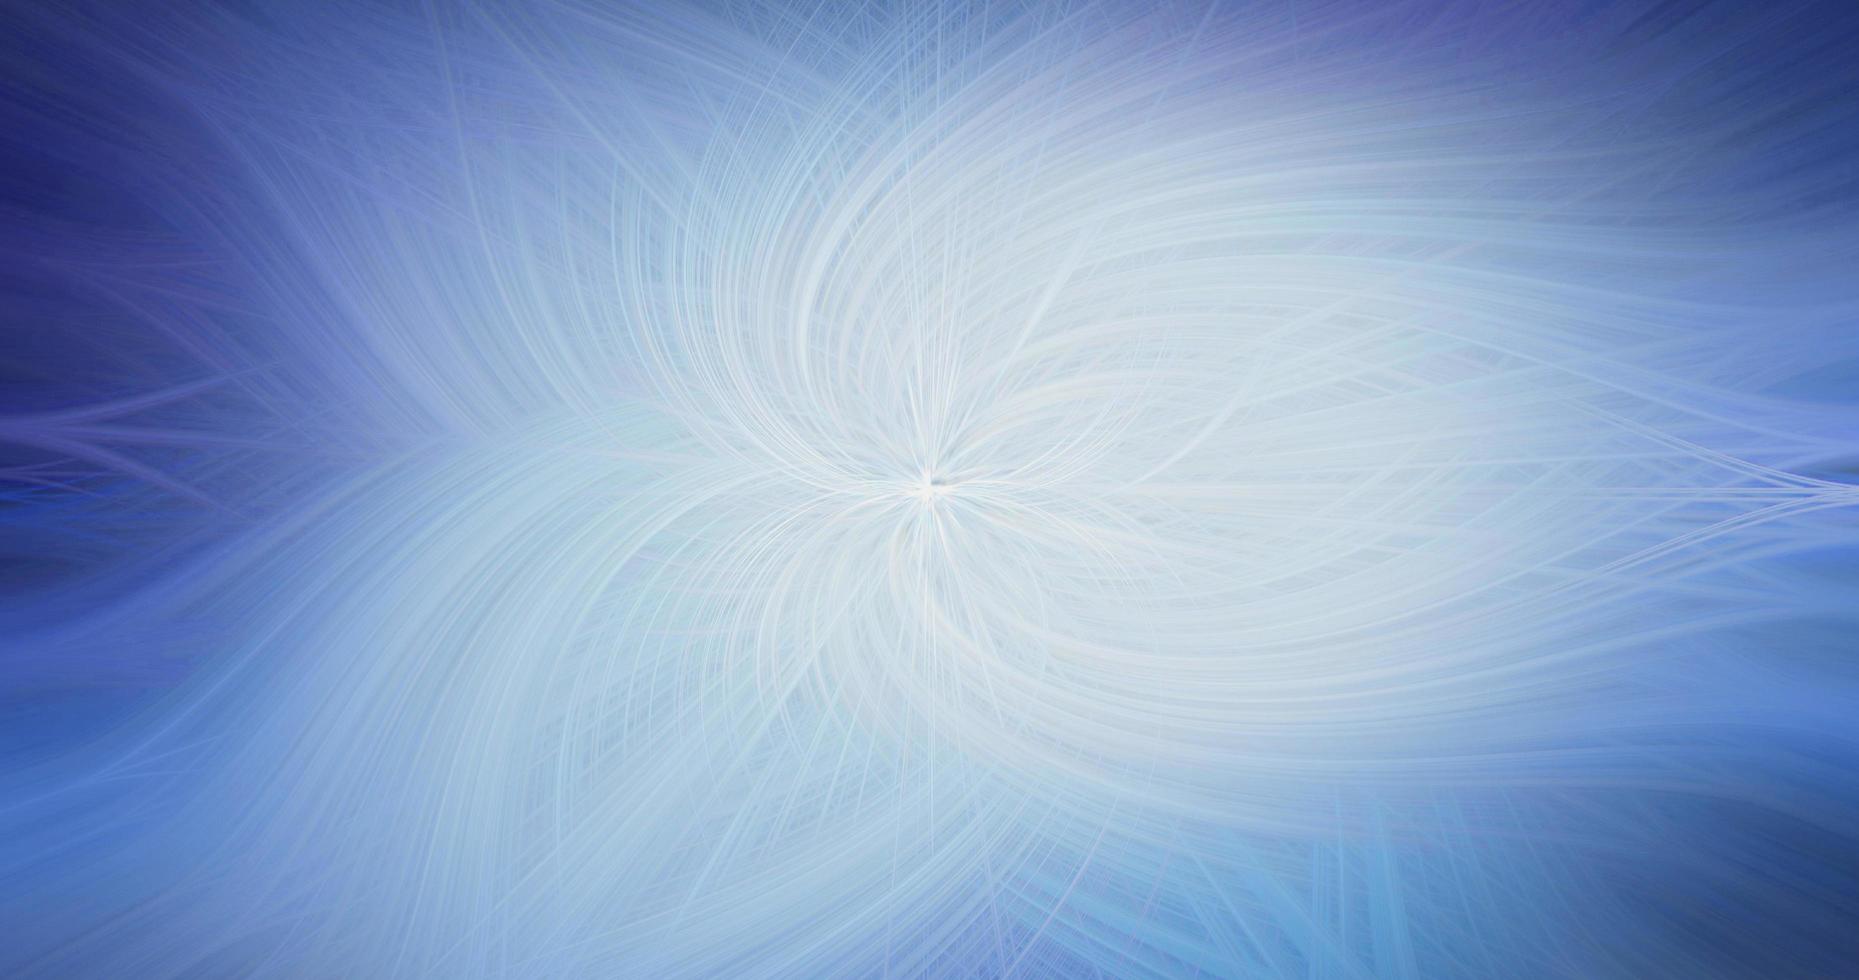 Efecto de remolinos que caen de textura de onda de fibra azul claro retorcida abstracta con patrón brillante de sendero curvo en la luz. foto